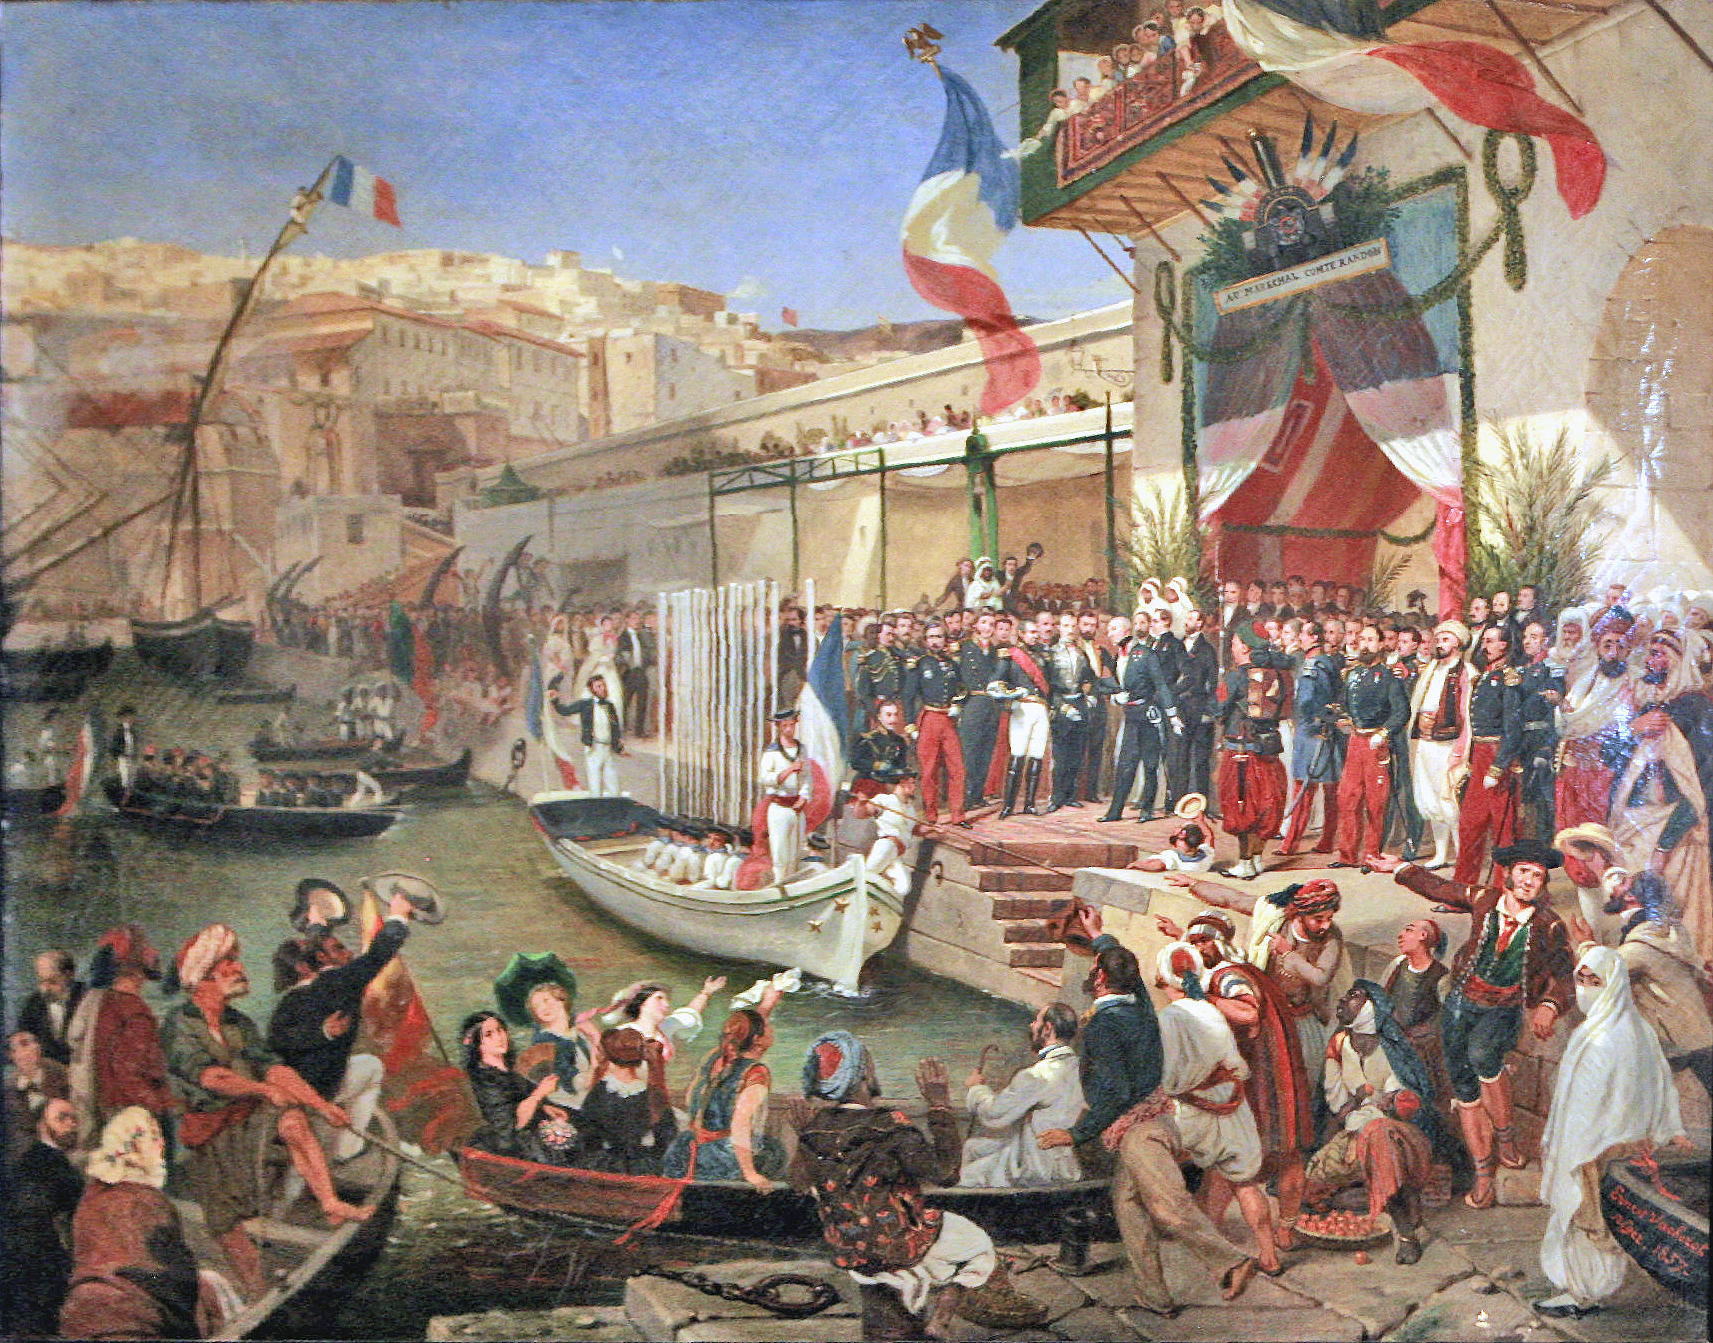 Maleri av en havn i Algerie, med franske flagg